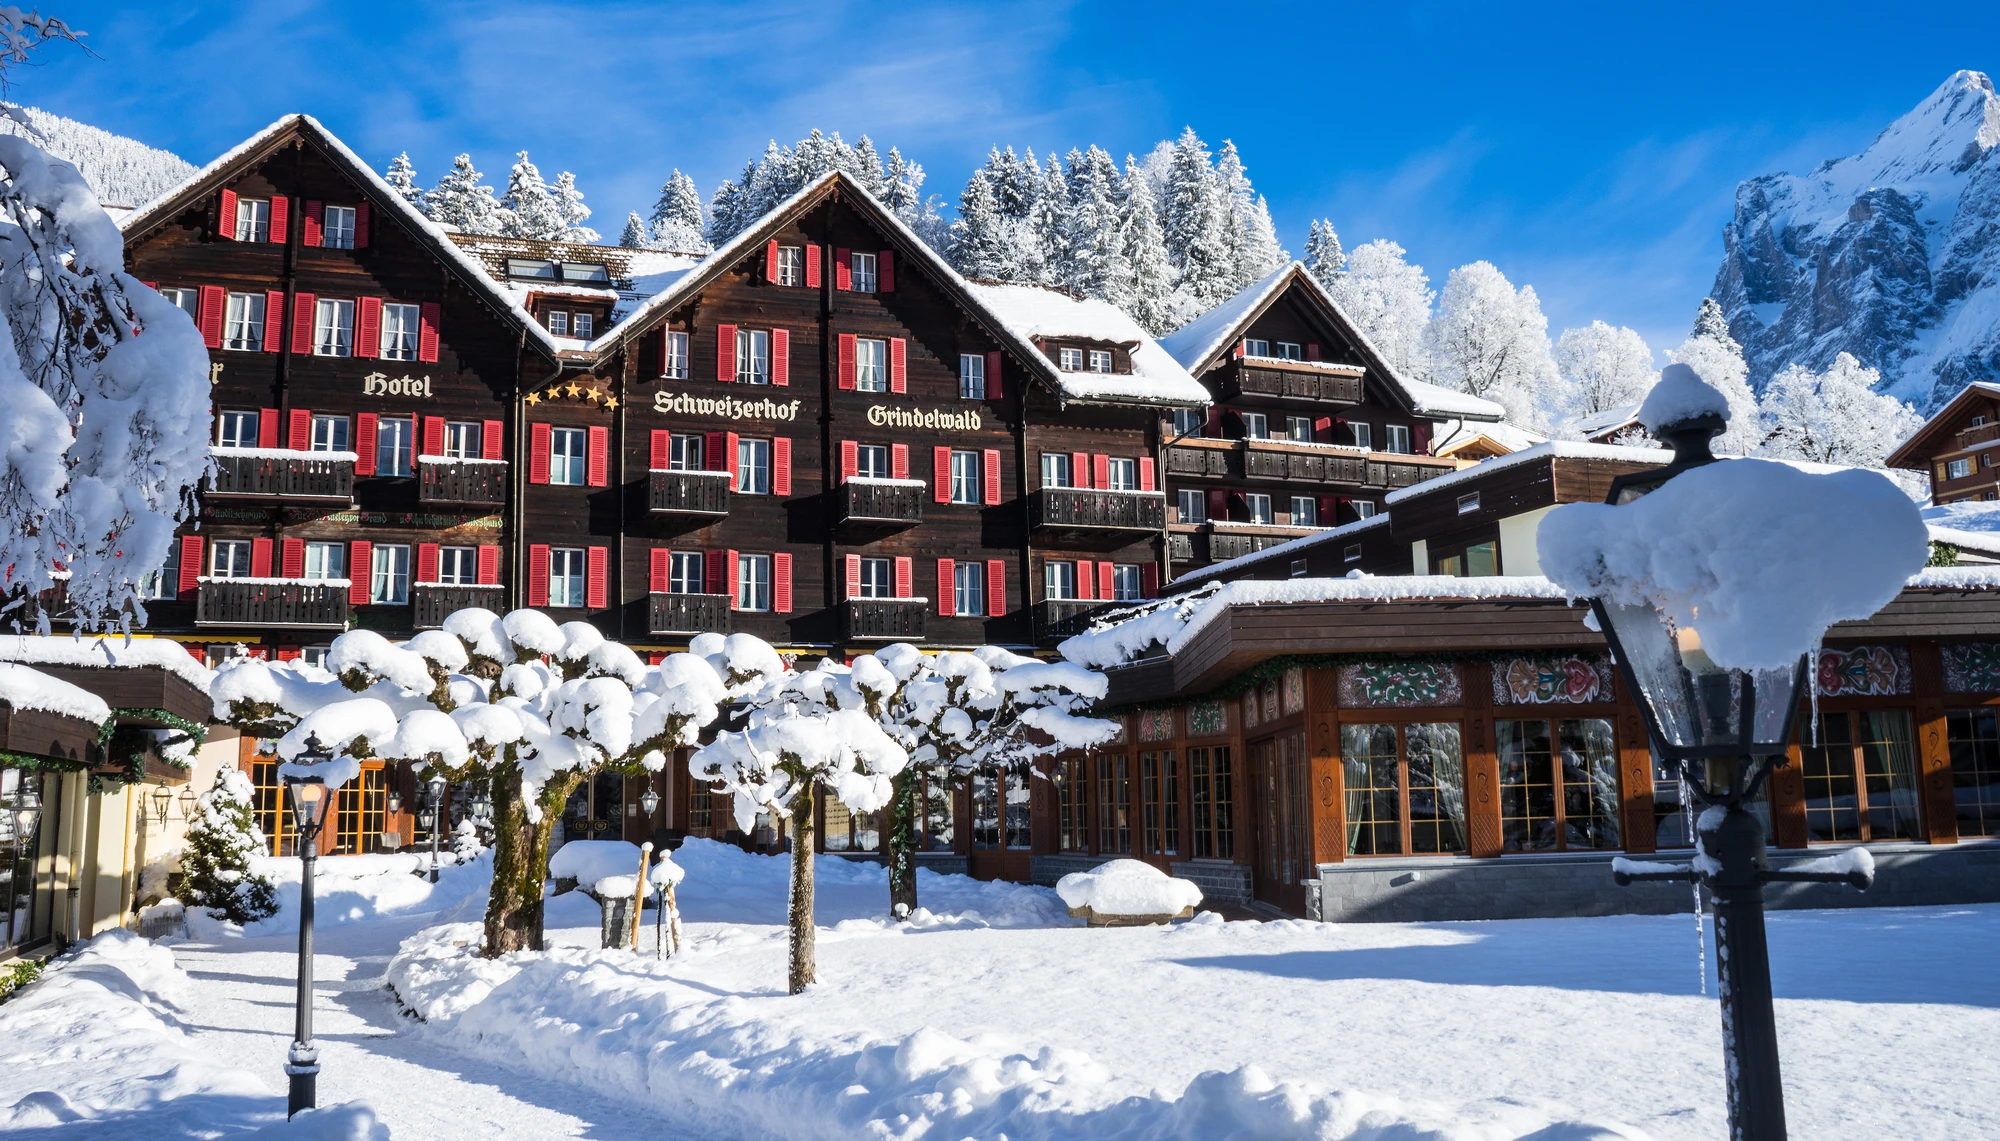 Hotel Romantik Schweizerhof in Grindelwald